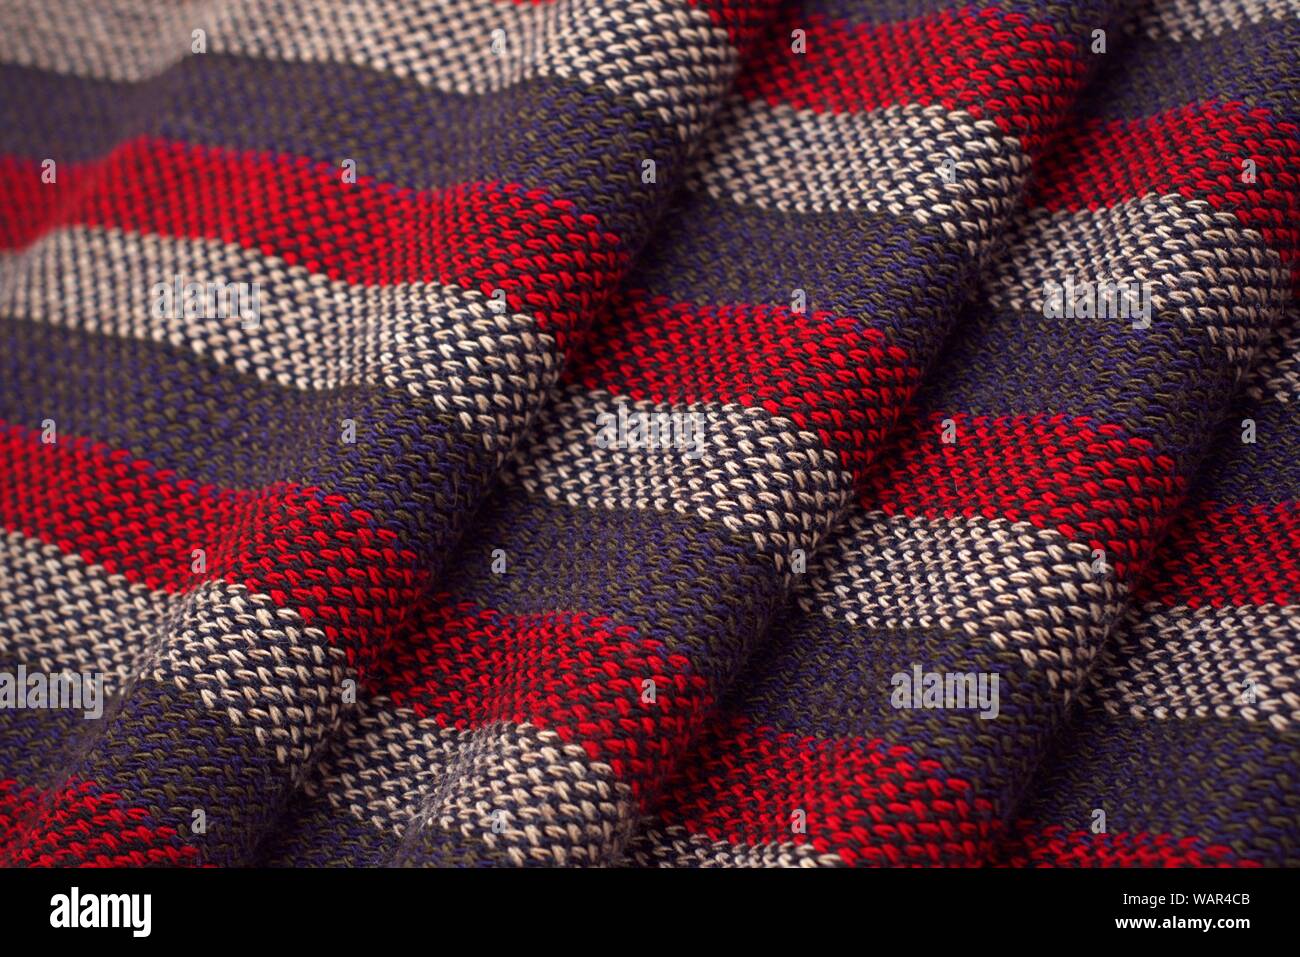 Rot, grau und weiß gestreiften Schal. Das wellige Band und die Textur des Threads ist deutlich zu sehen. Stockfoto